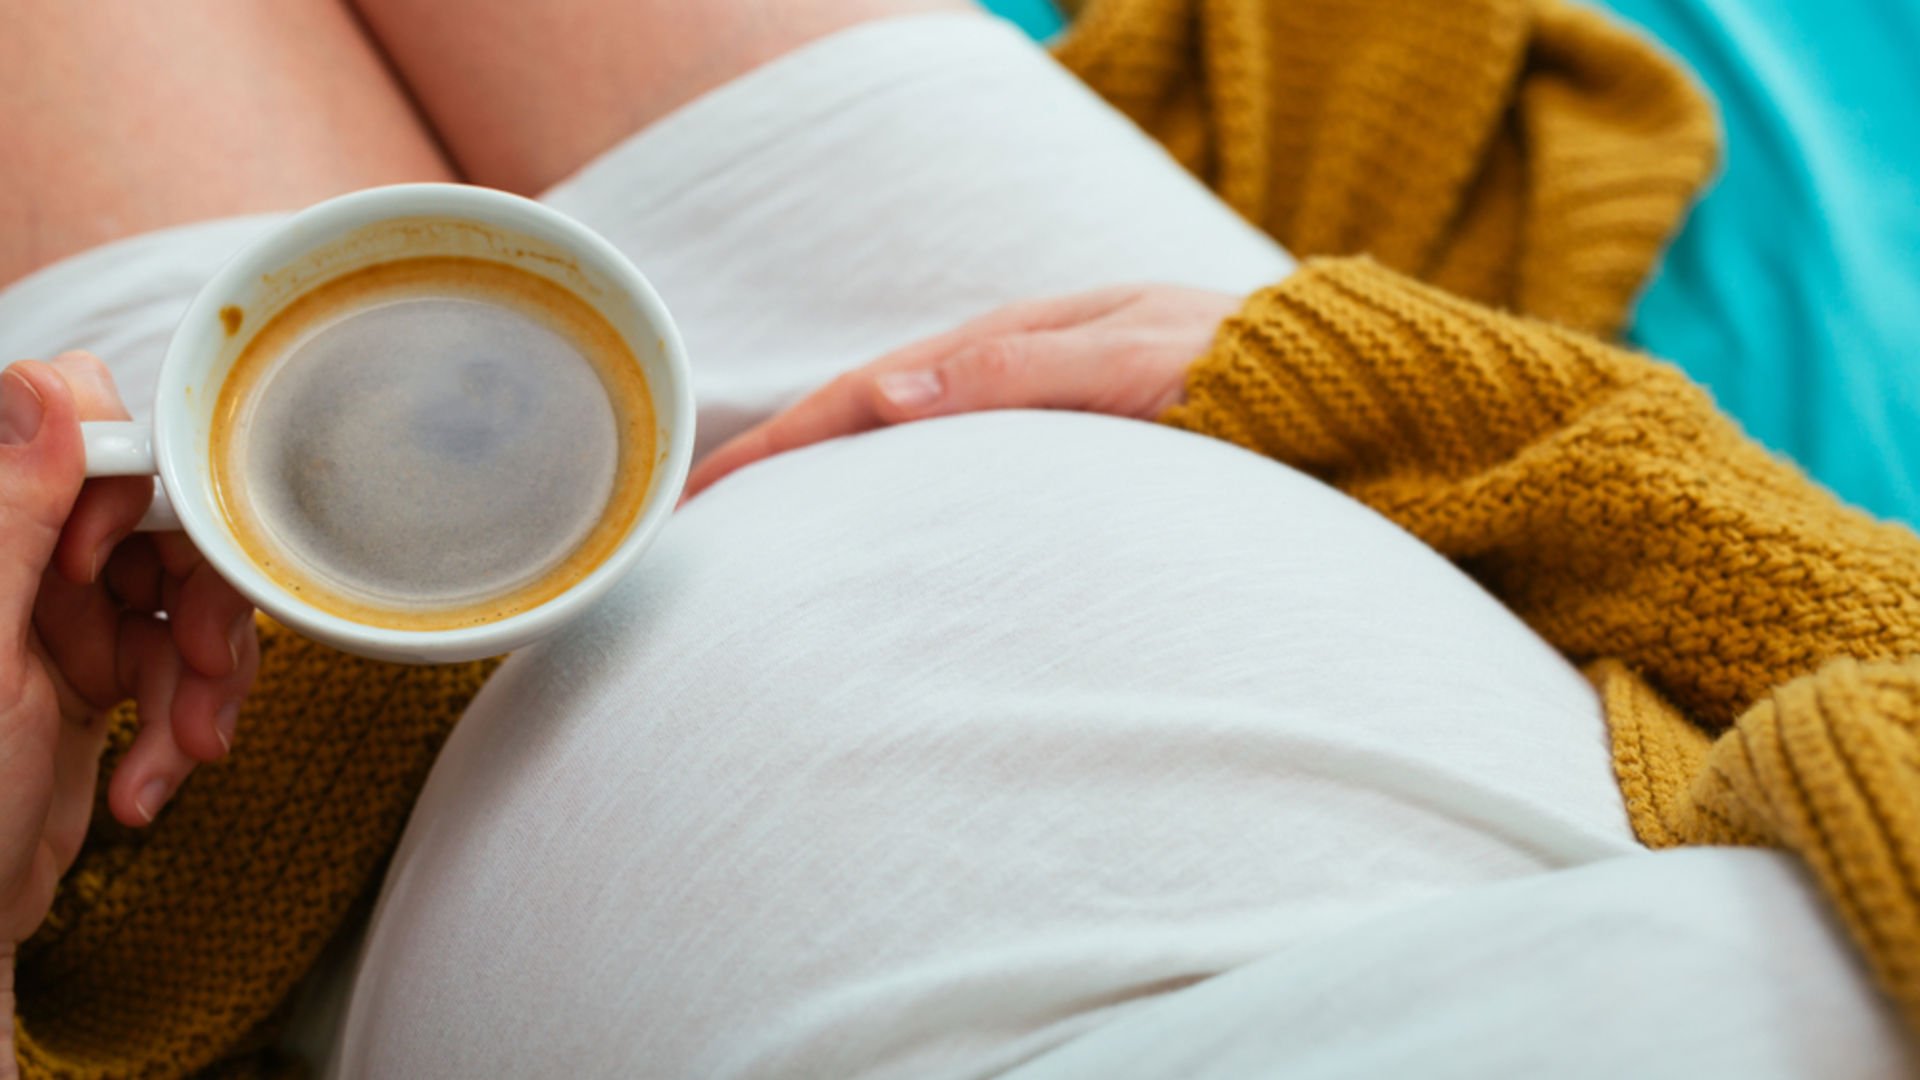 Hamilelikte kafein tüketimi zararlı mı? | Hamilelik